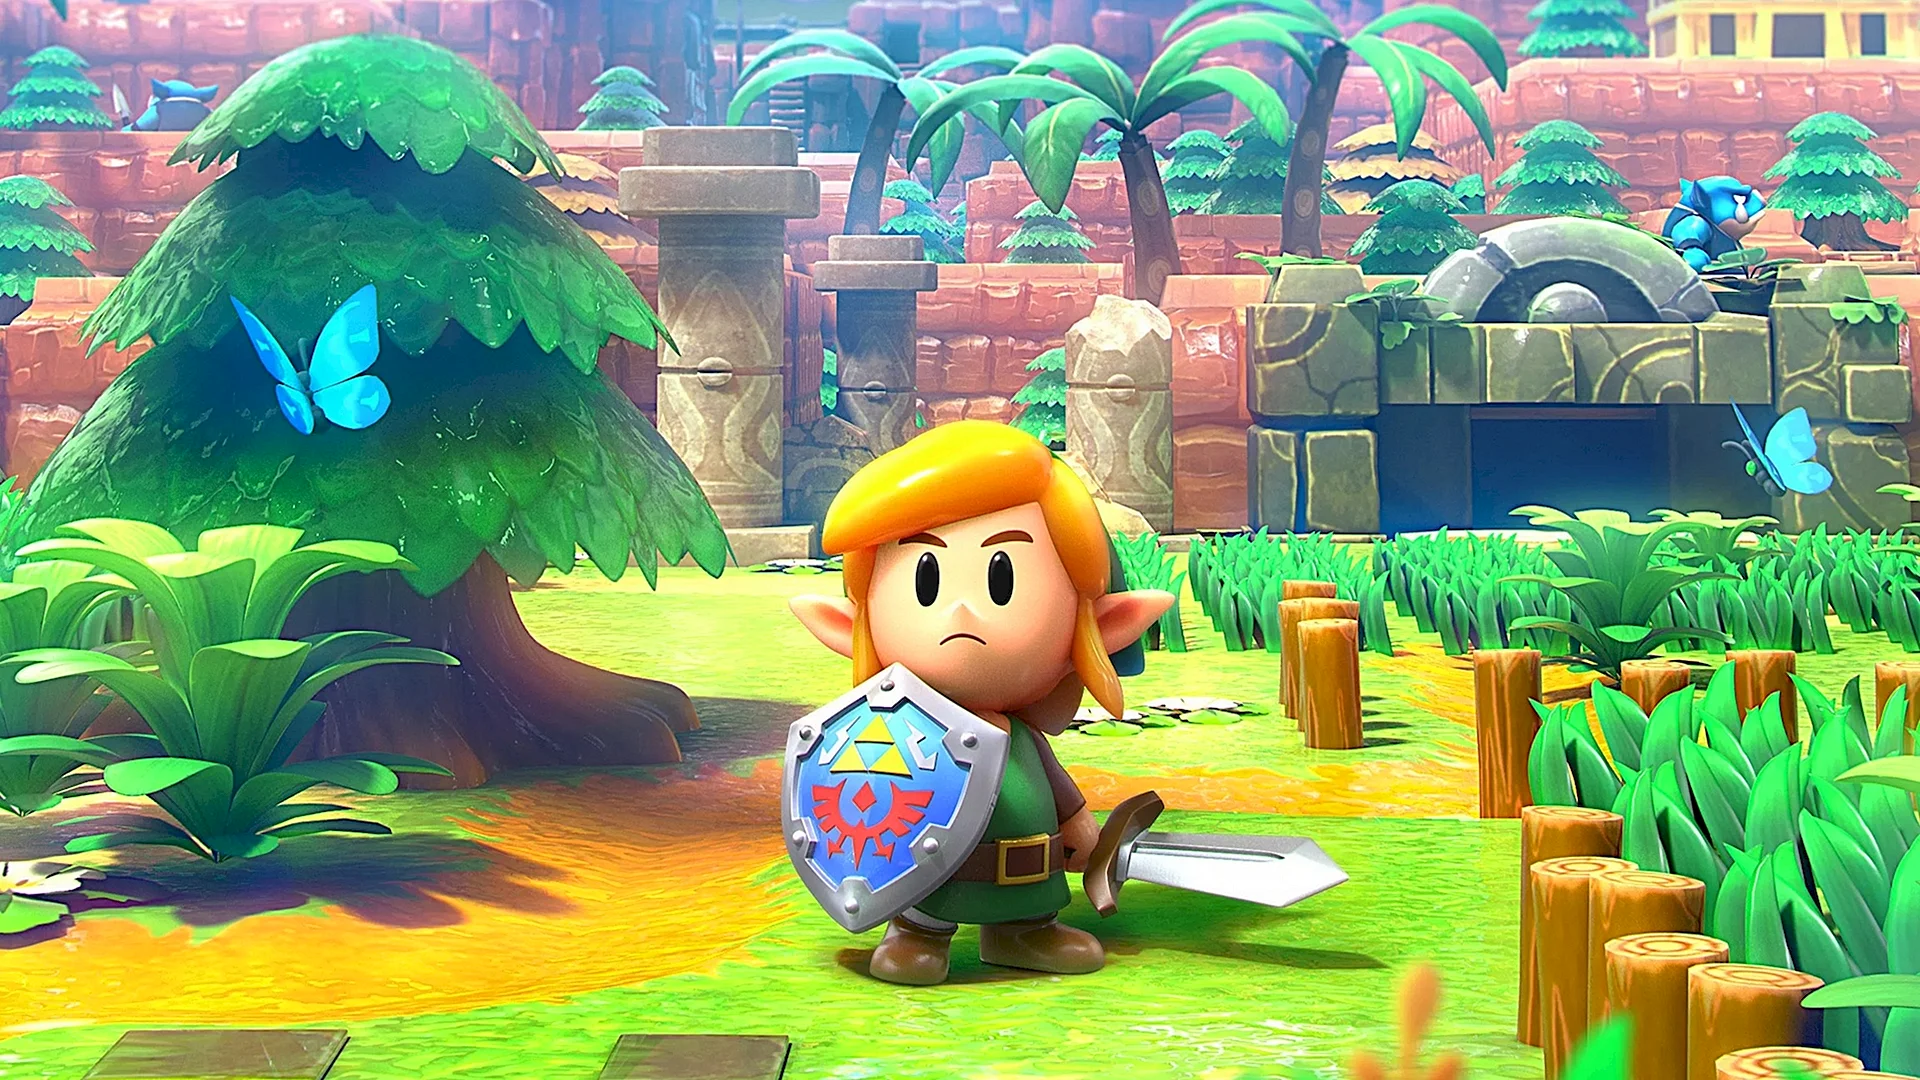 The Legend Of Zelda Links Awakening Wallpaper